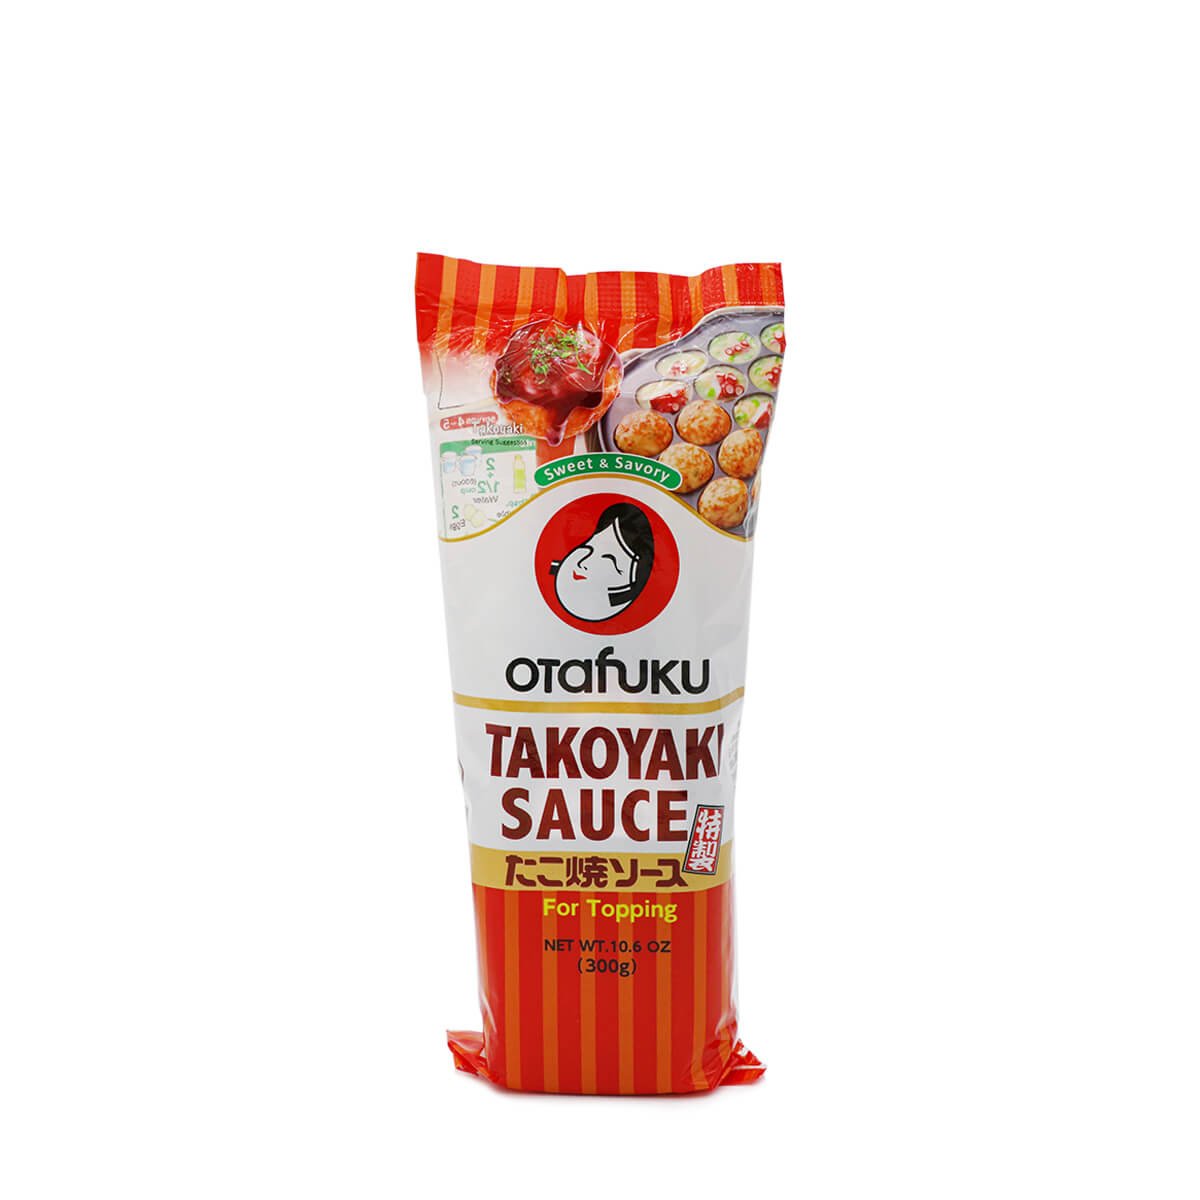 Otafuku Takoyaki Sauce 10.6oz